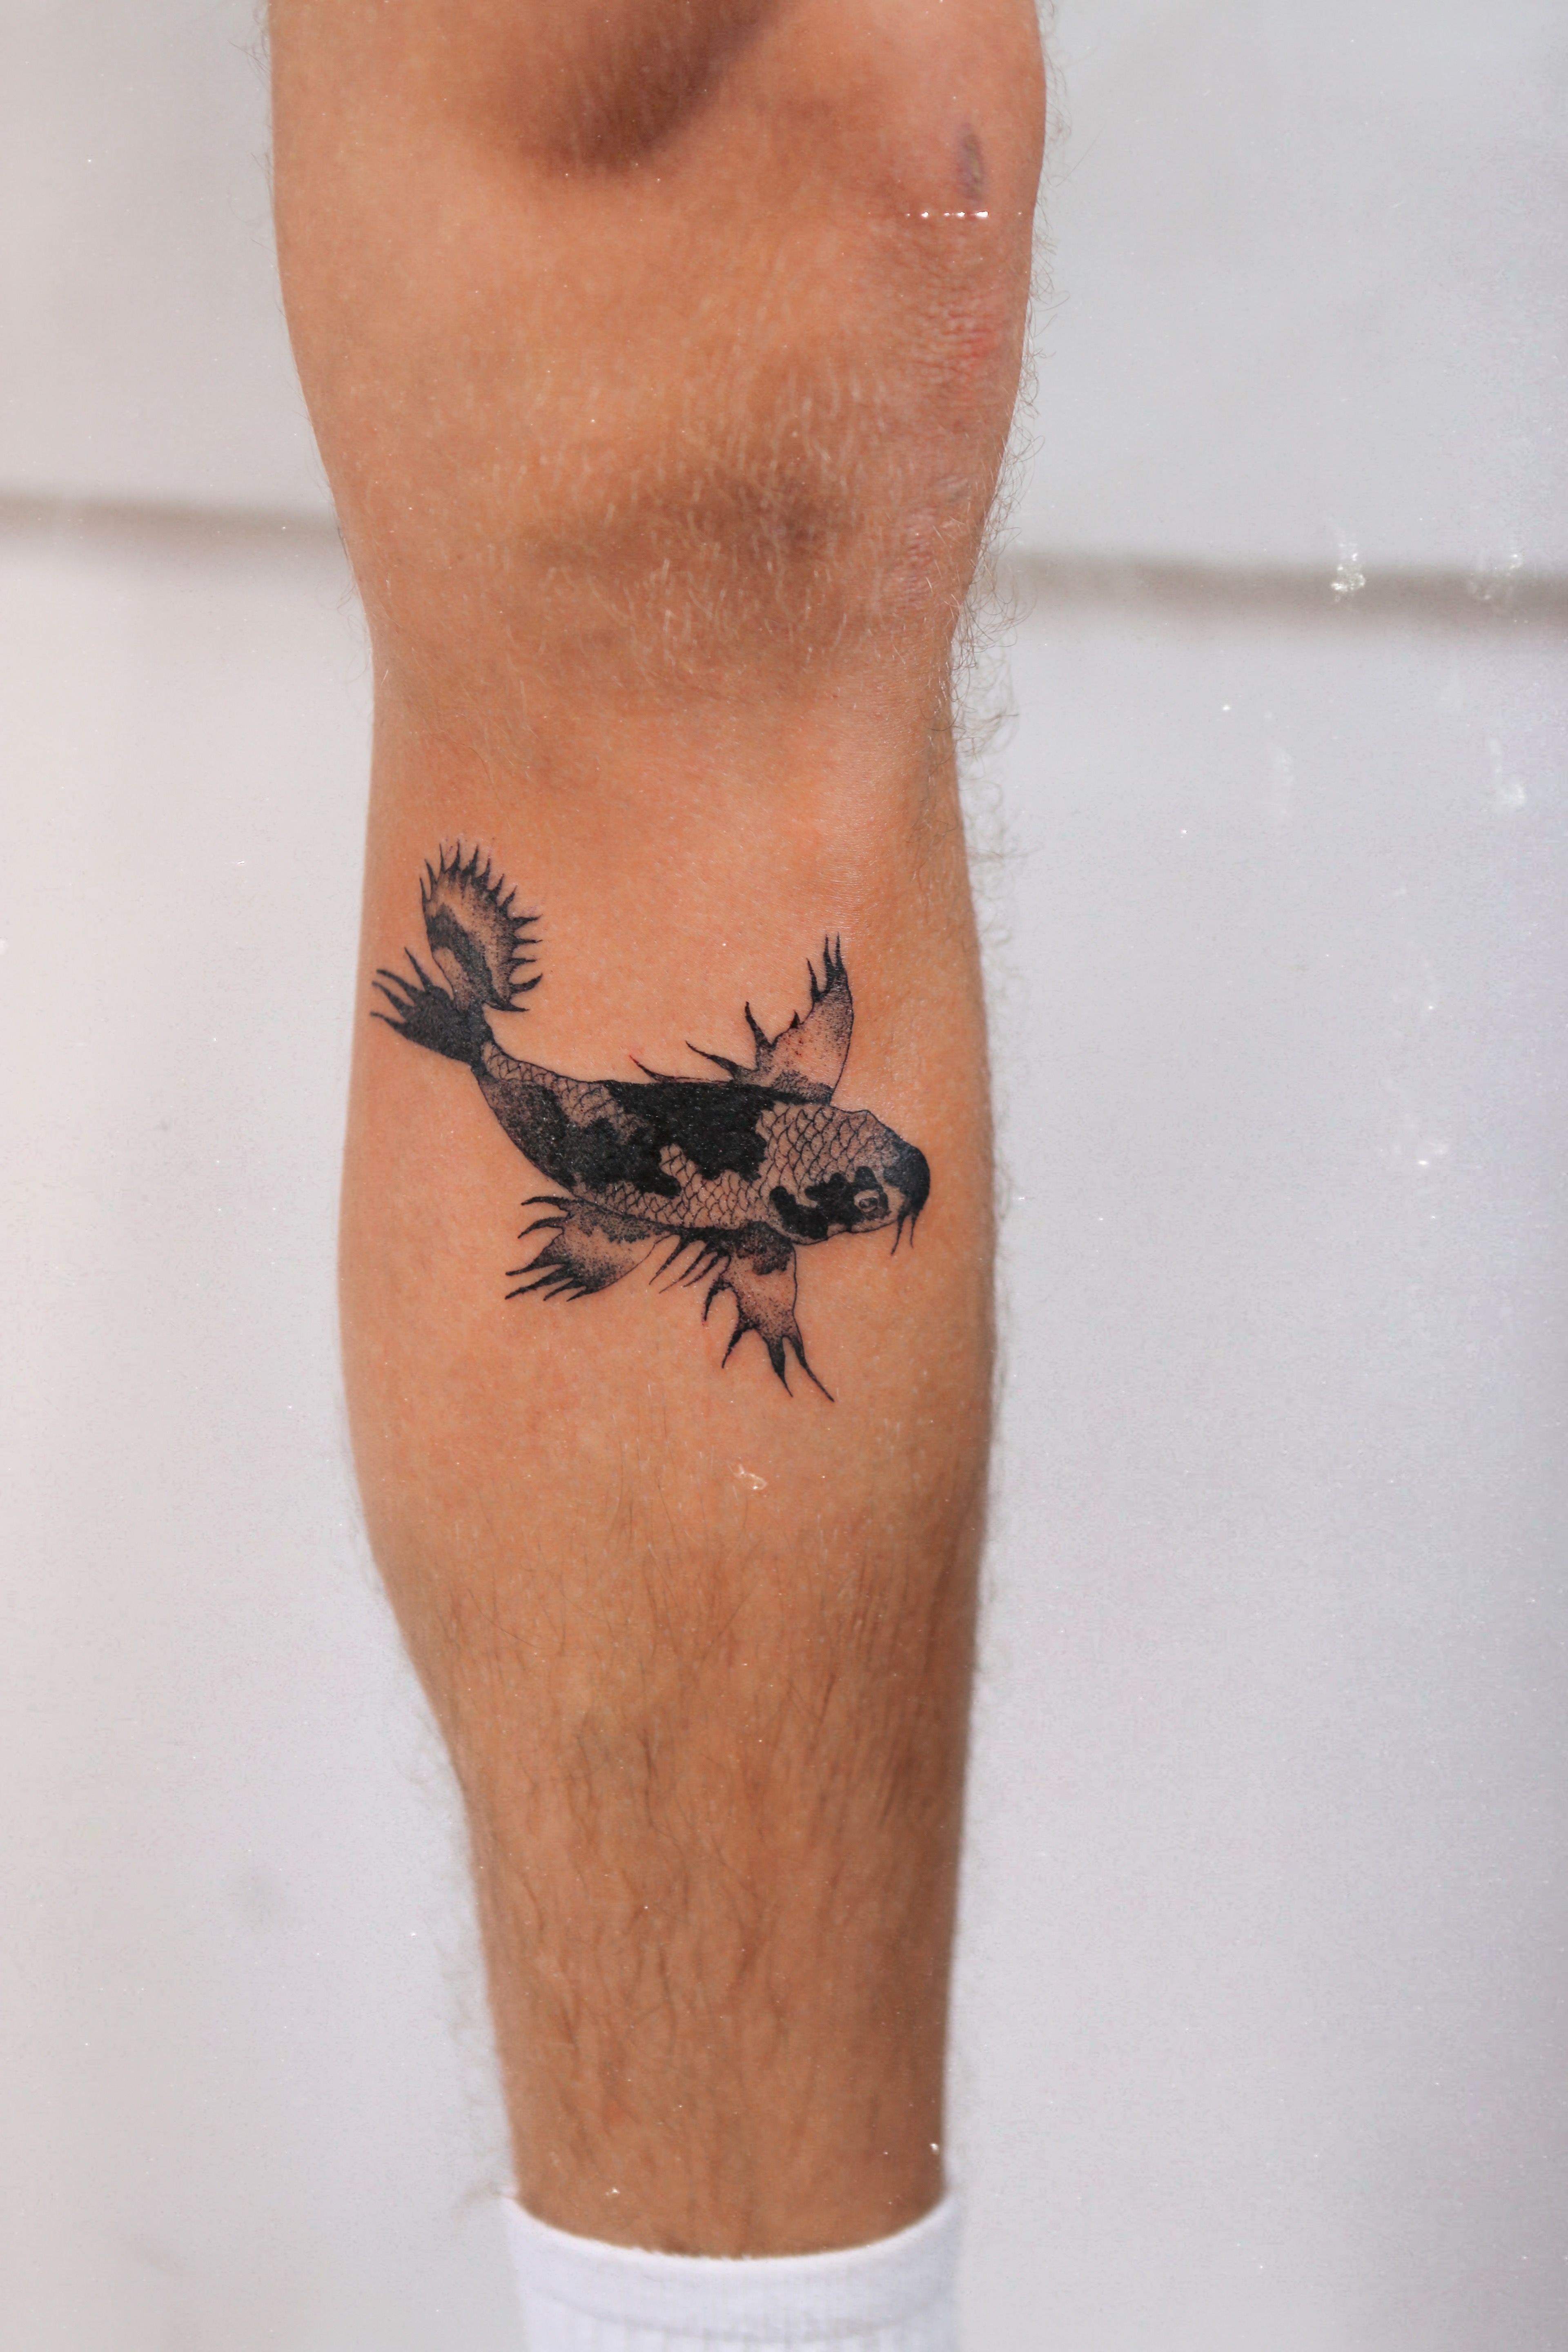 Tattoos on Tumblr: Little fish 🐟 . . #tattoo #tattooed #inked #tattoowork # fish #fishtattoo #finelines #details #ruthbarjatattoo #lisbon...